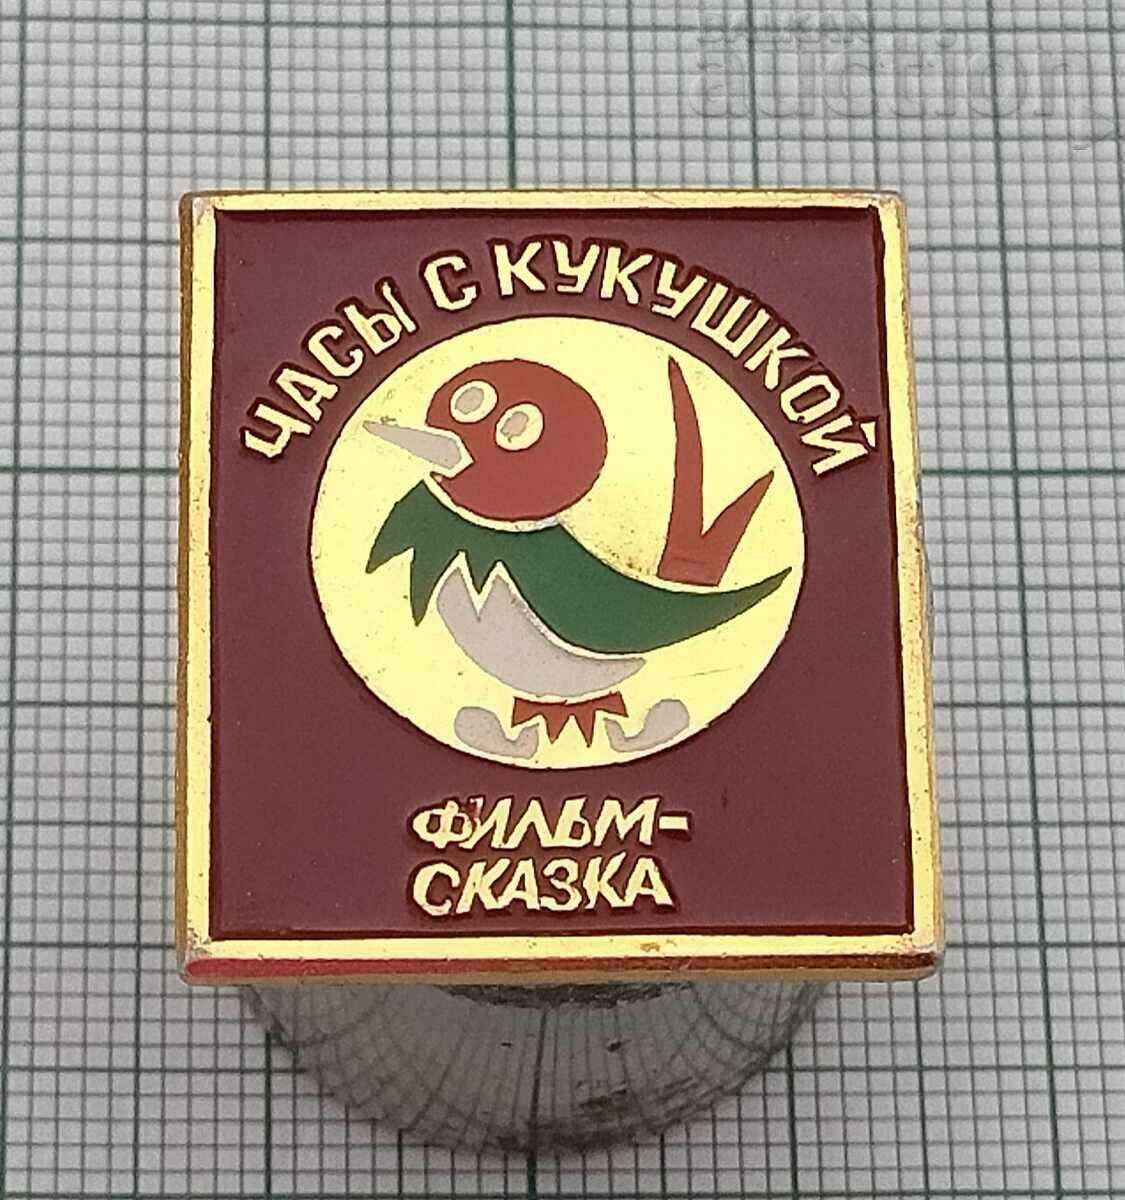 ANIMATED CUCKOO CLOCK USSR BADGE